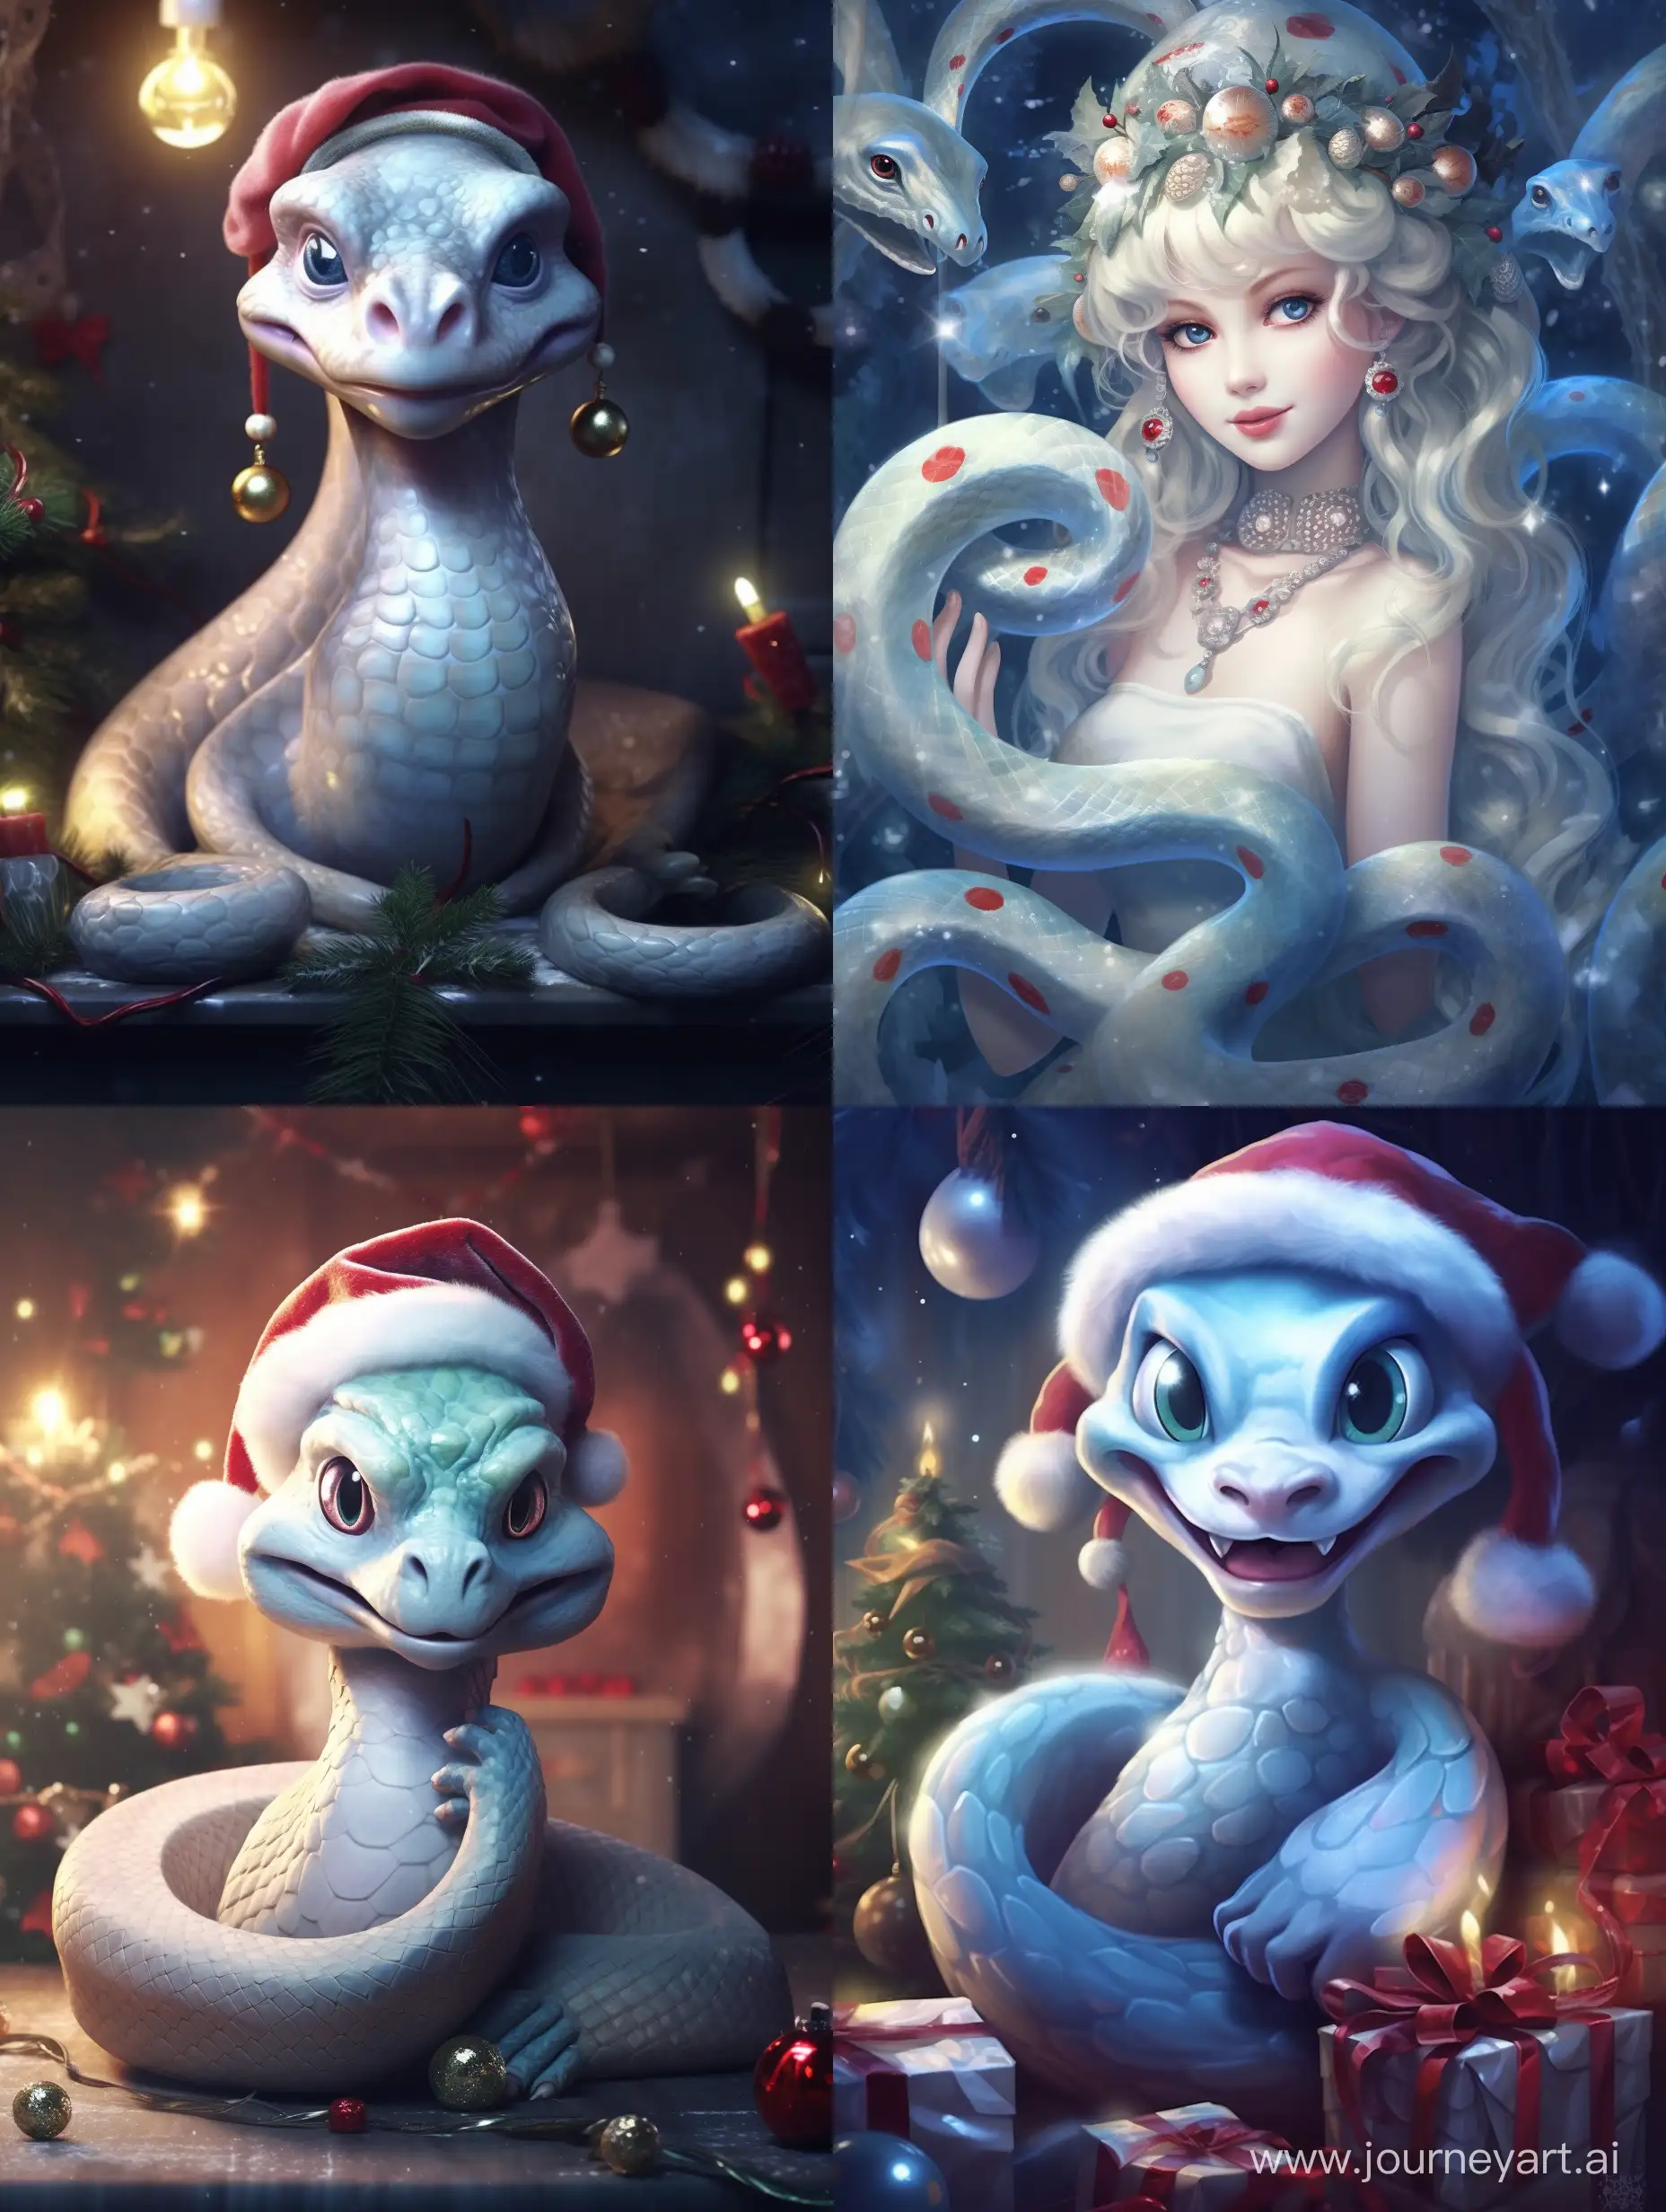 Очаровательный змея в стиле pixar, Disney в шапке Санта Клауса. Кругом ее новогодние подпрки. Вся картинка в бледных пастельных цветах